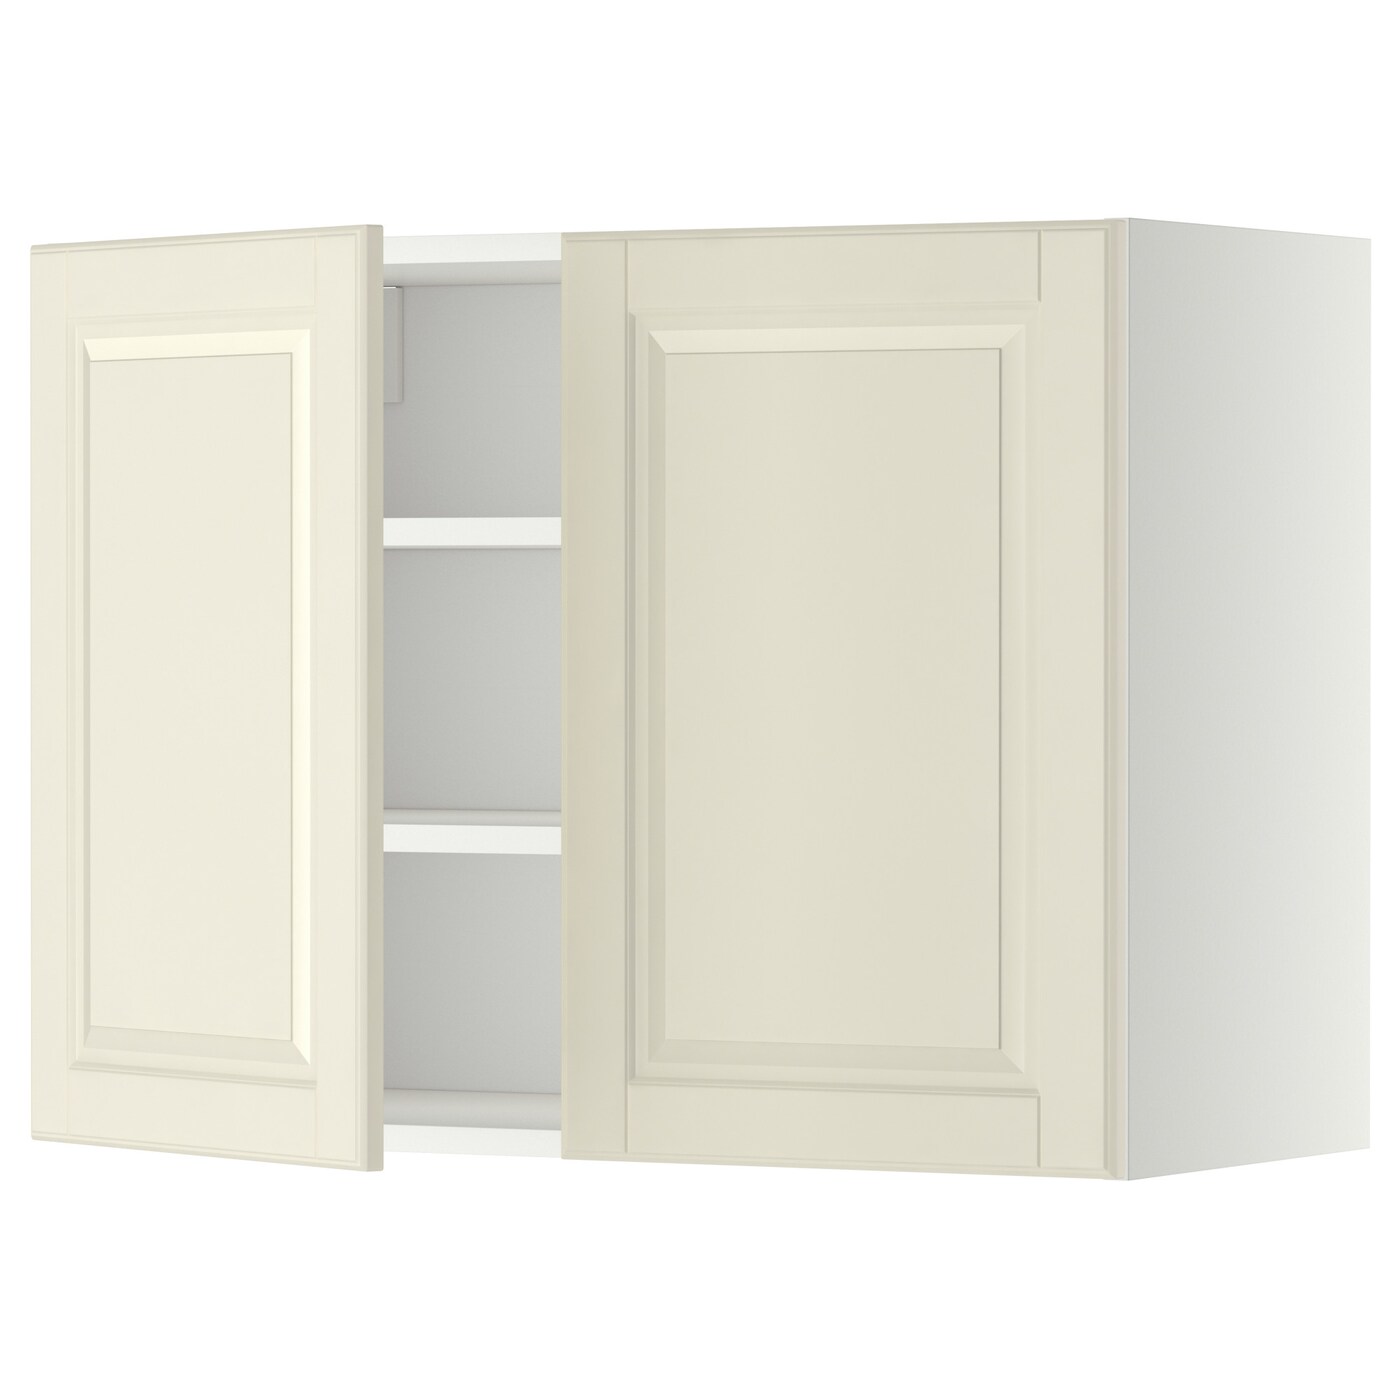 Навесной шкаф с полкой - METOD IKEA/ МЕТОД ИКЕА, 60х80 см,  белый/кремовый